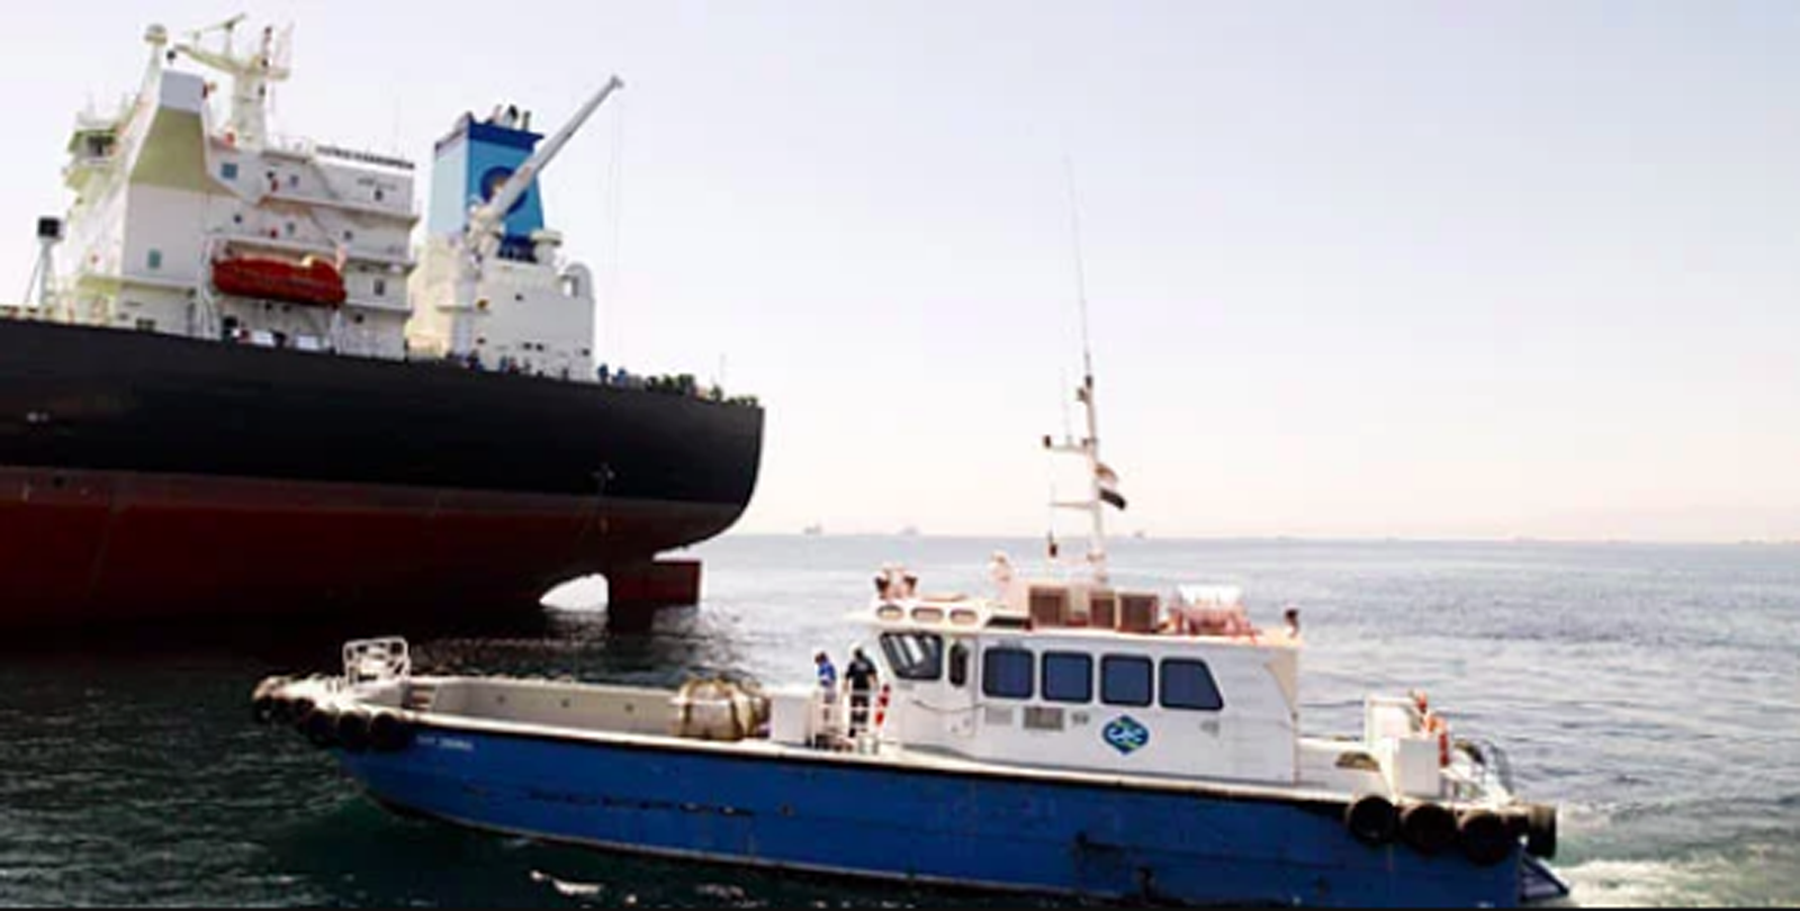 crew change vessel agency liberia